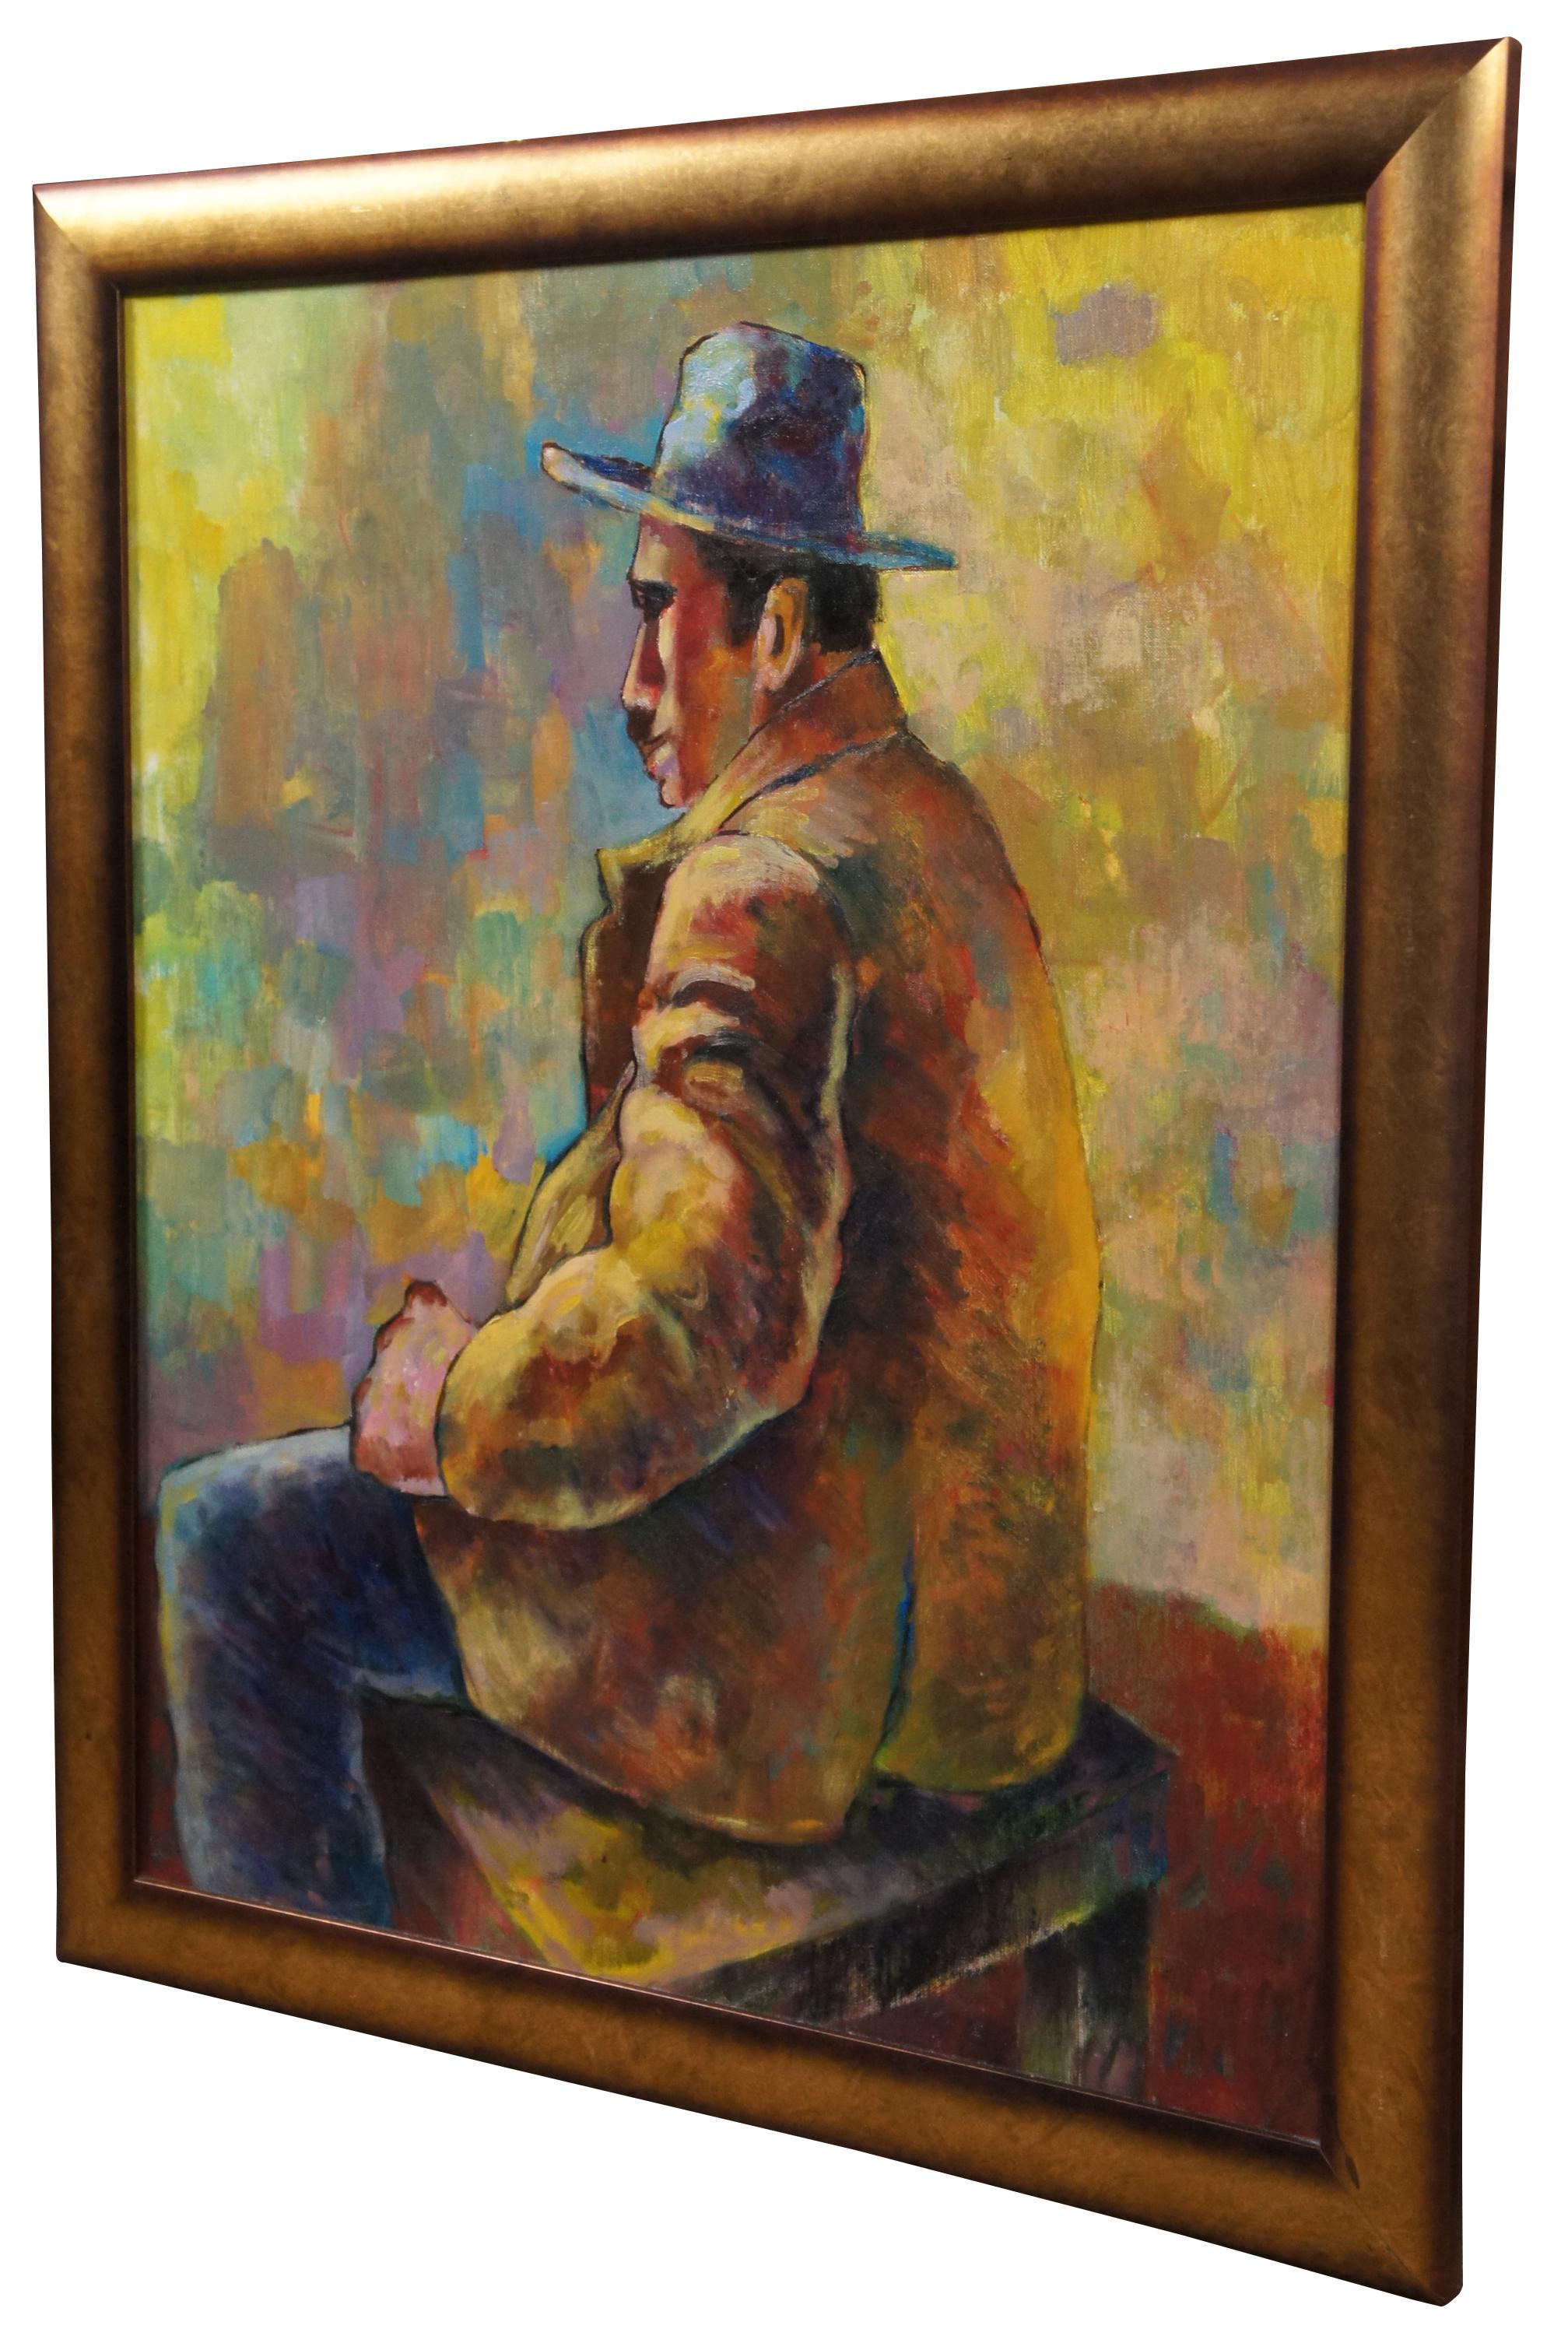 Vintage original Öl auf Leinwand Bord Malerei eines Mannes in einem Hut und Jacke mit dem Rücken zum Künstler. Aus dem Nachlass von Louis Wolchonok.

Maße: Ohne Rahmen - 23